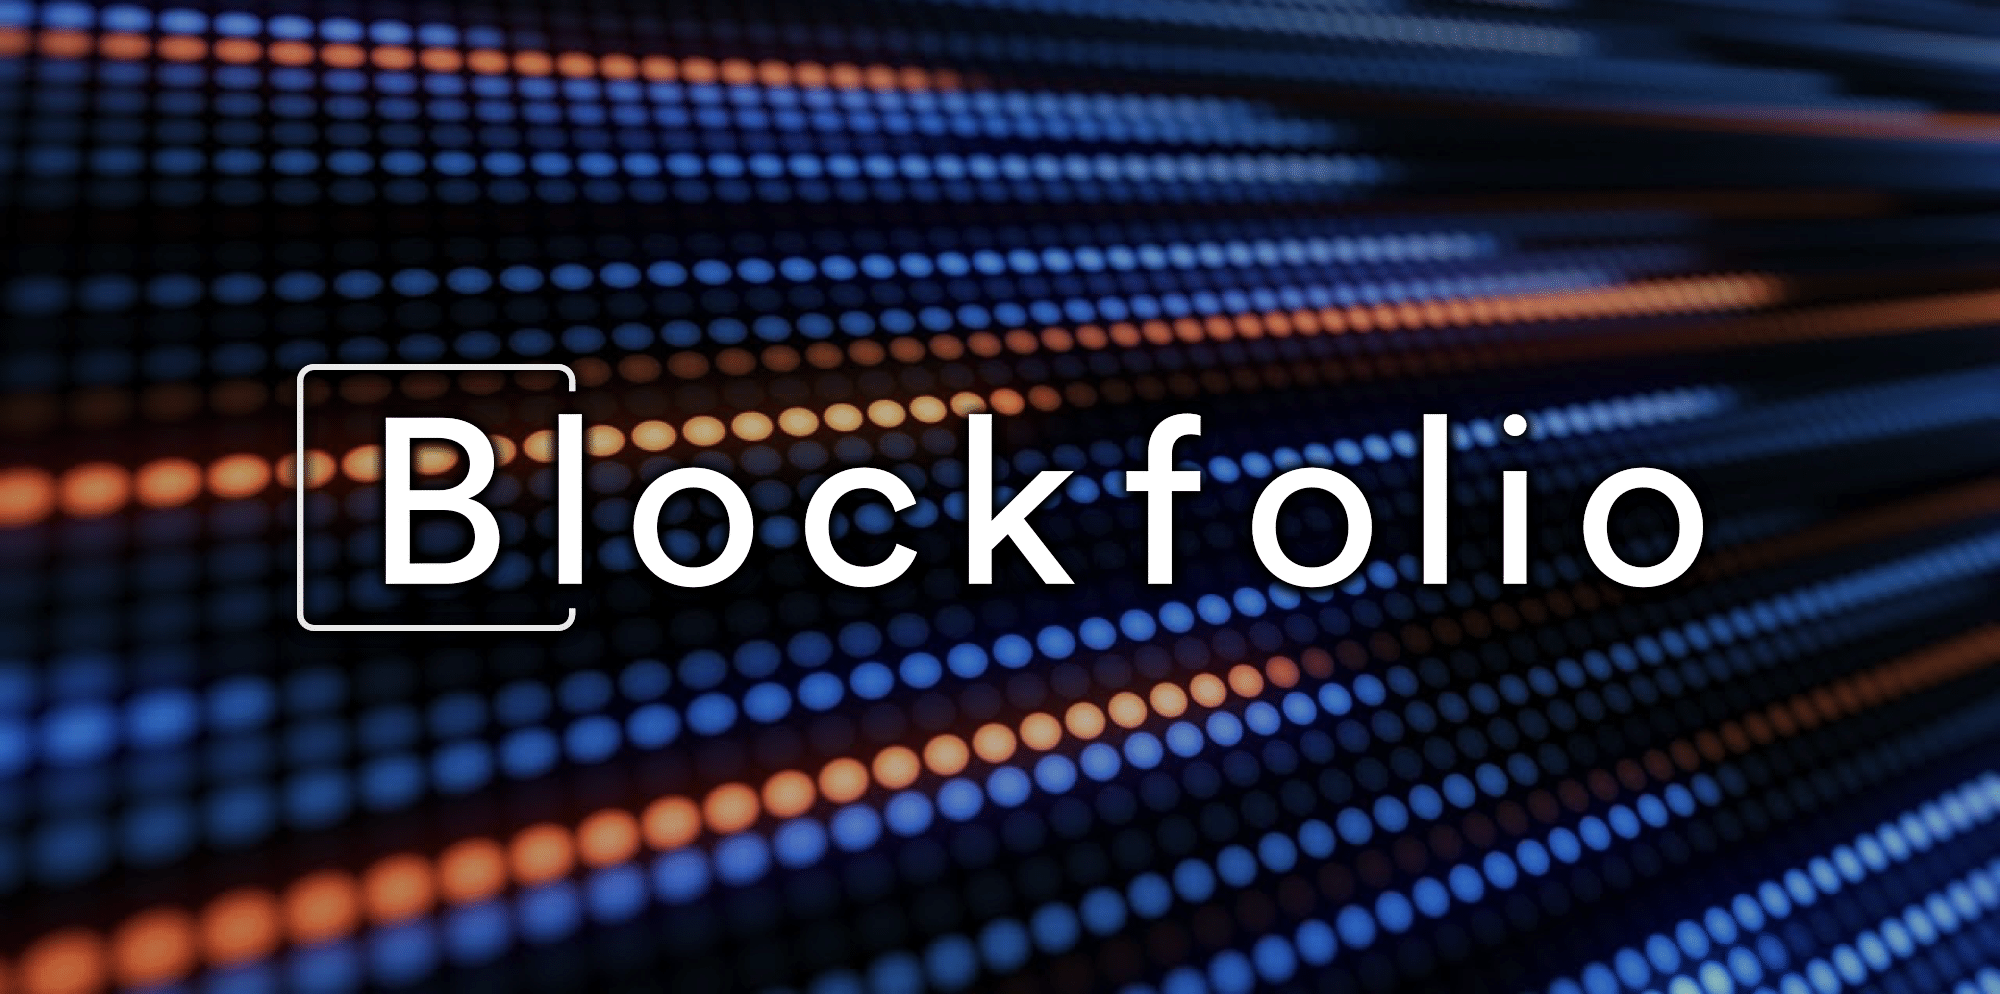 blockfolio app down